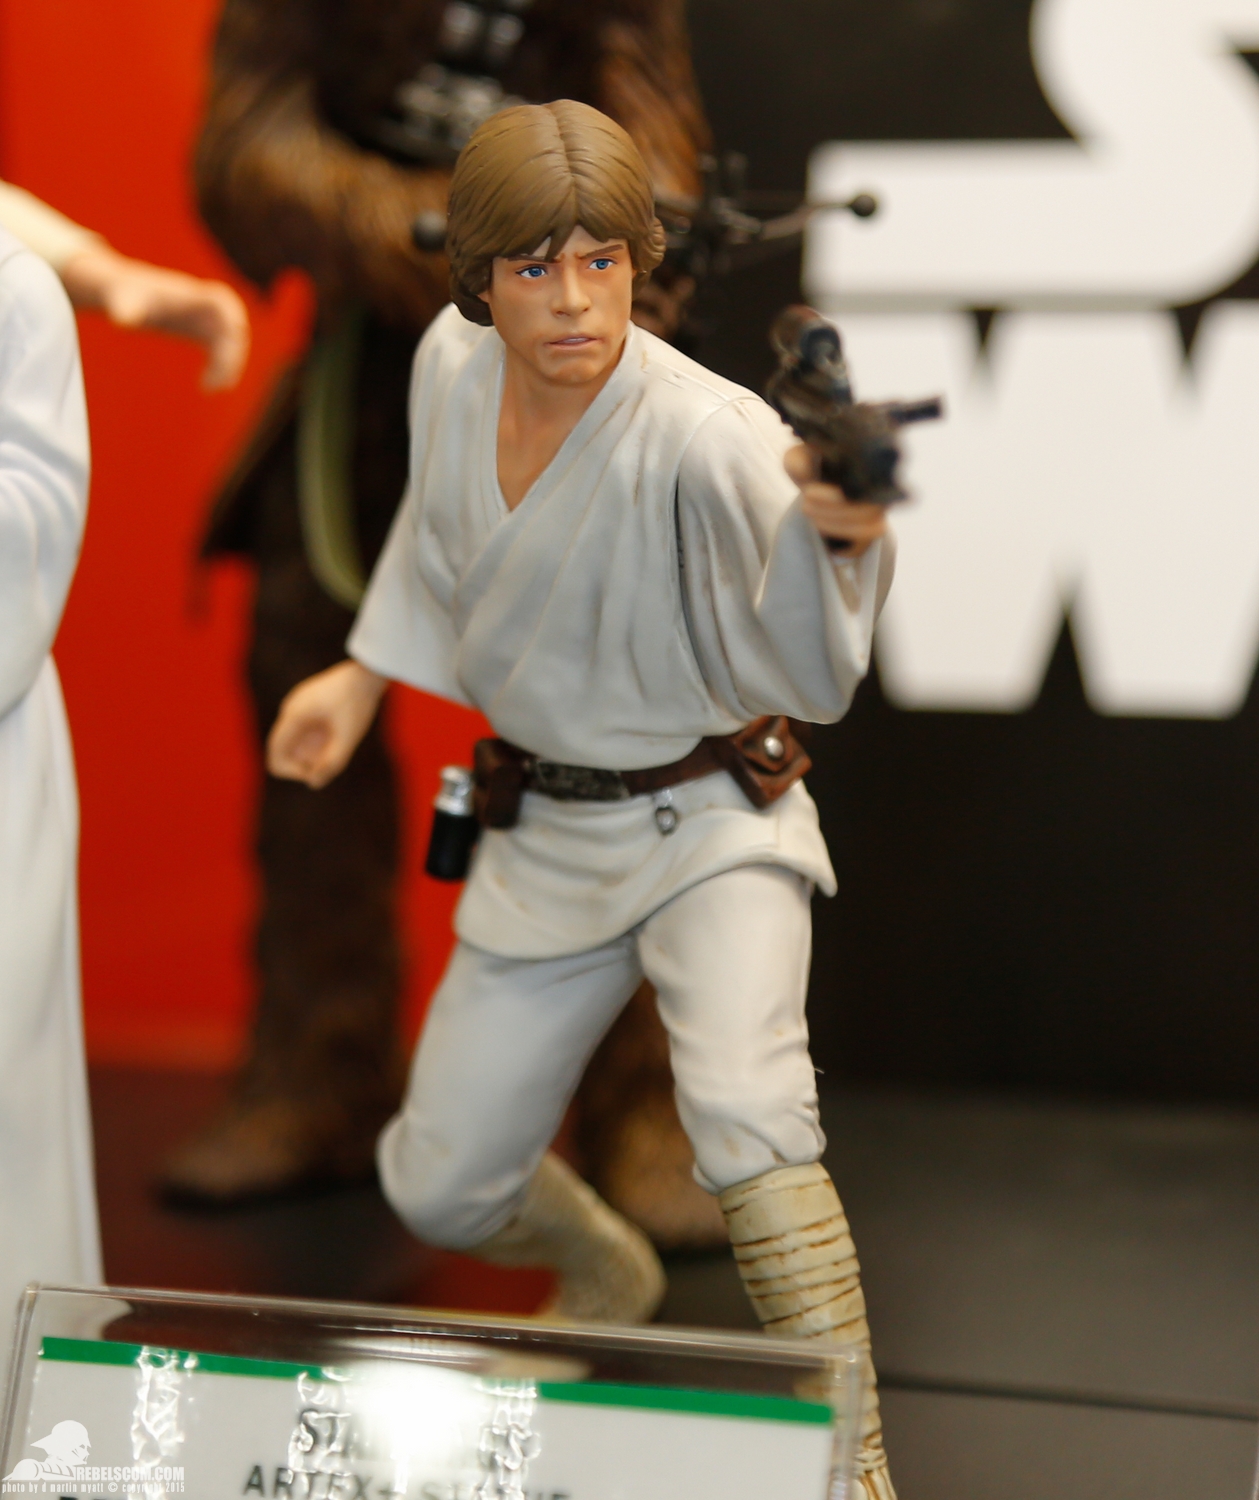 2015-International-Toy-Fair-Star-Wars-Kotobukiya-019.jpg